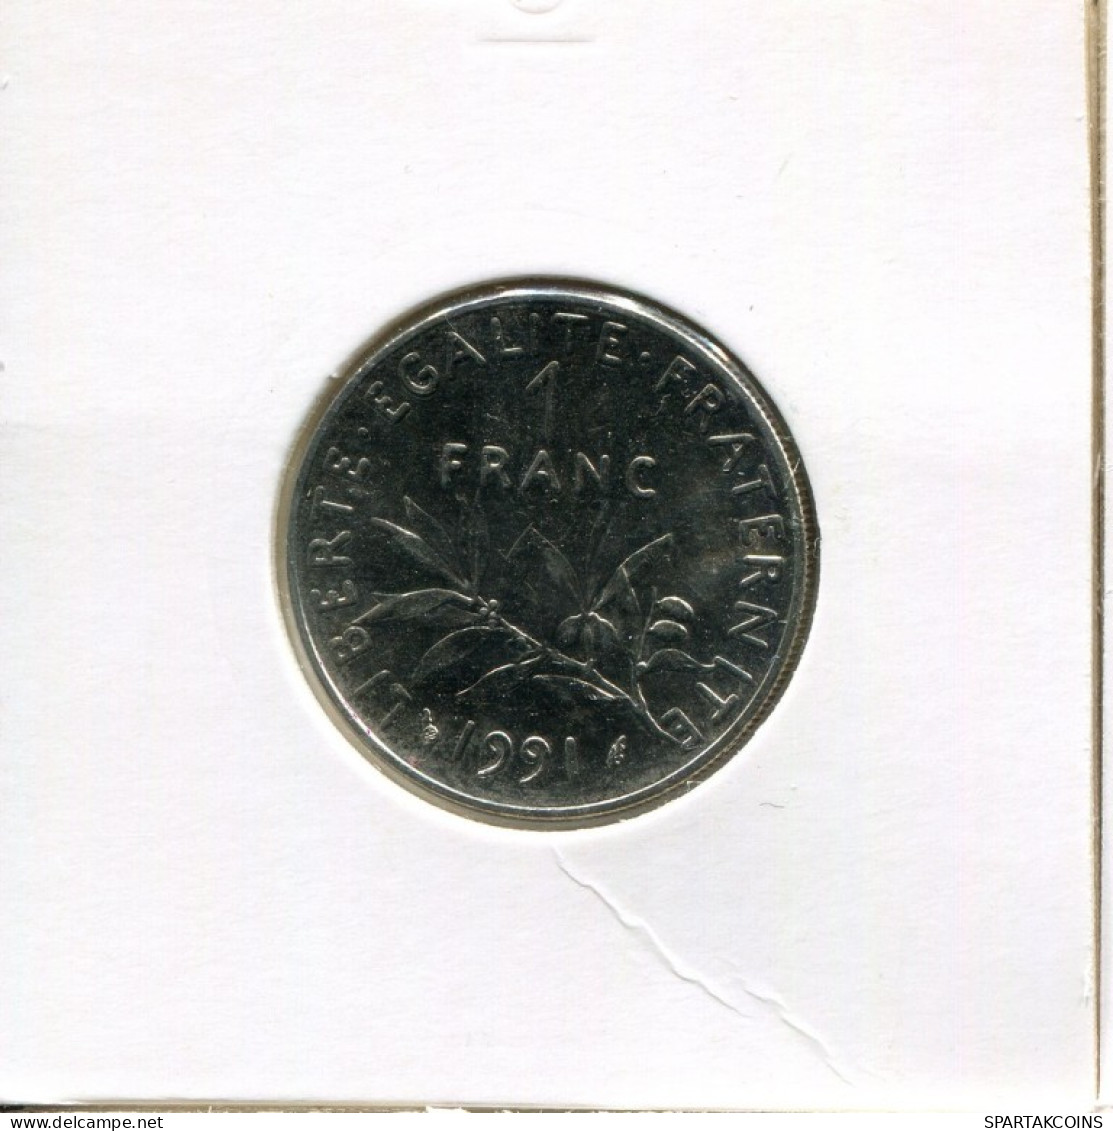 1 FRANC 1991 FRANCE Coin French Coin #AK534.U.A - 1 Franc